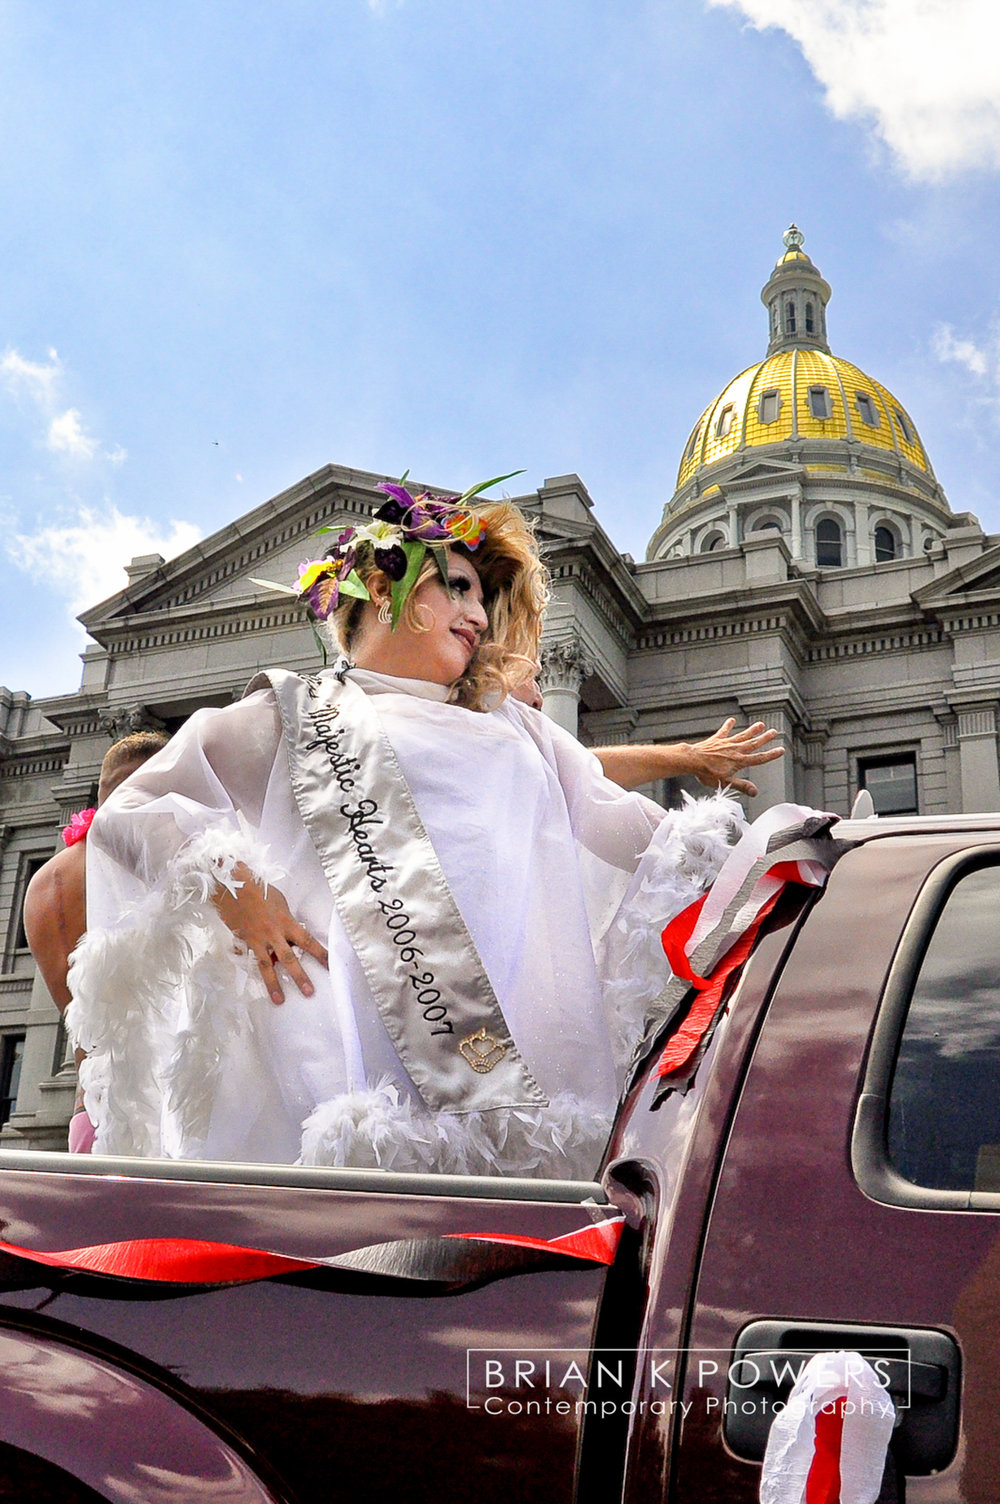 BrianK Powers Photography_Denver Colorado Gay Pride Parade_014.jpg